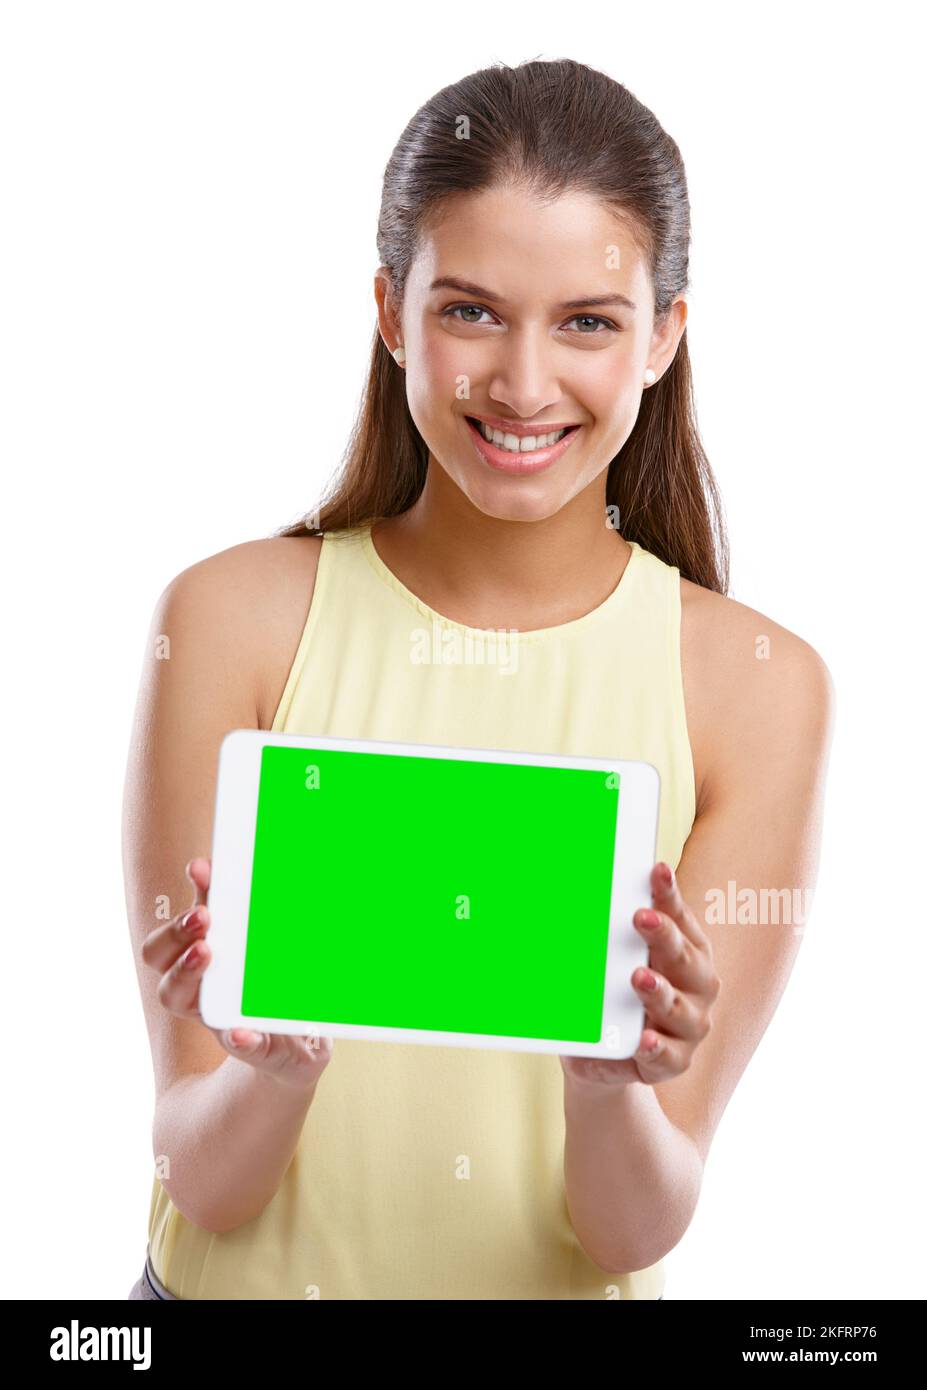 Schauen Sie sich meine Homepage an. Studioaufnahme einer schönen jungen Frau, die ein digitales Tablet mit einem Chroma-Key-Bildschirm vor einem weißen Hintergrund hochhält. Stockfoto